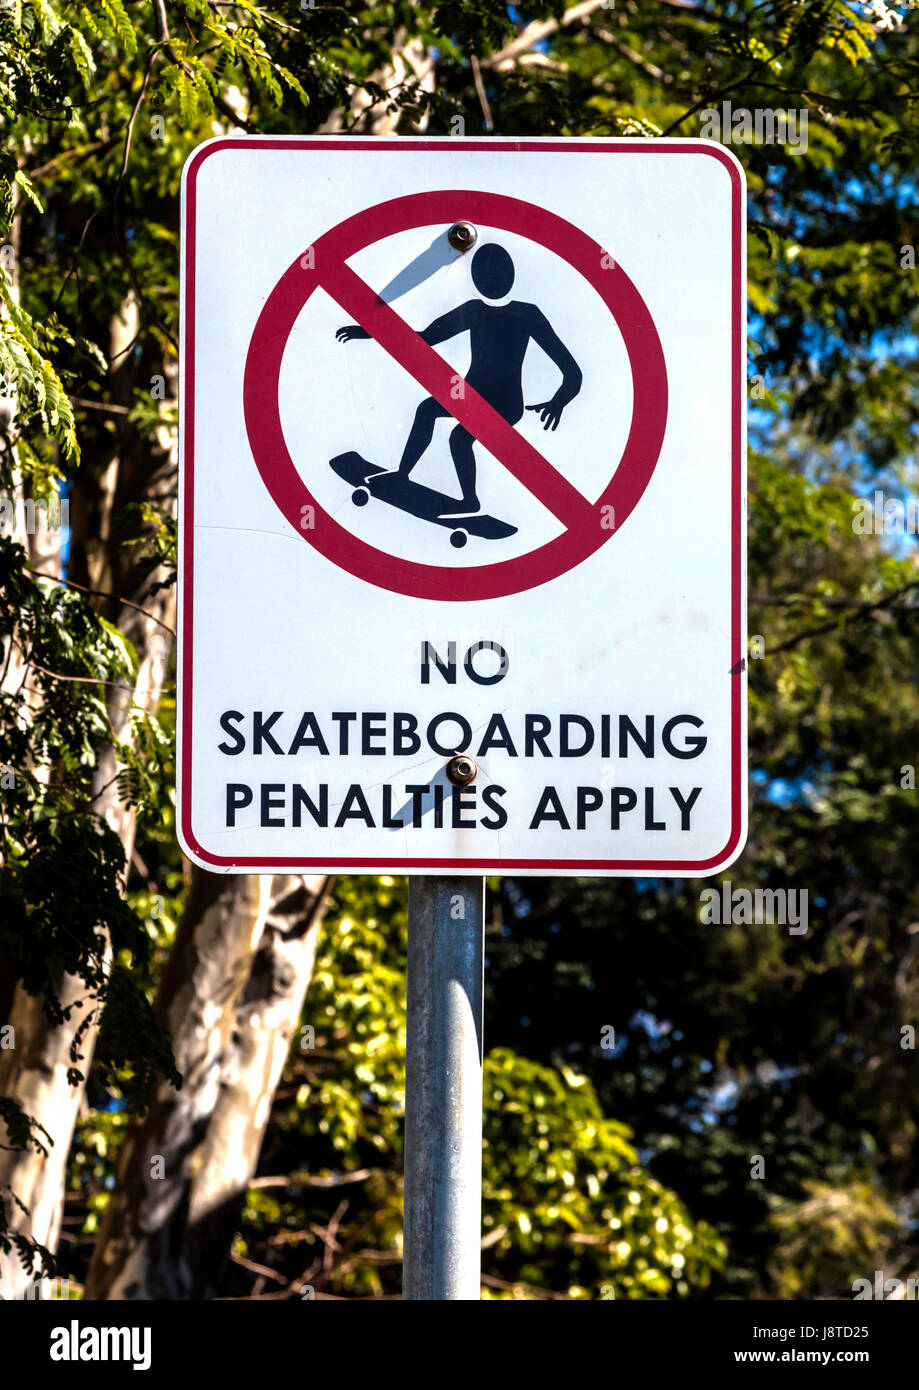 Aviso: no se aplicarán sanciones skateboard Foto de stock